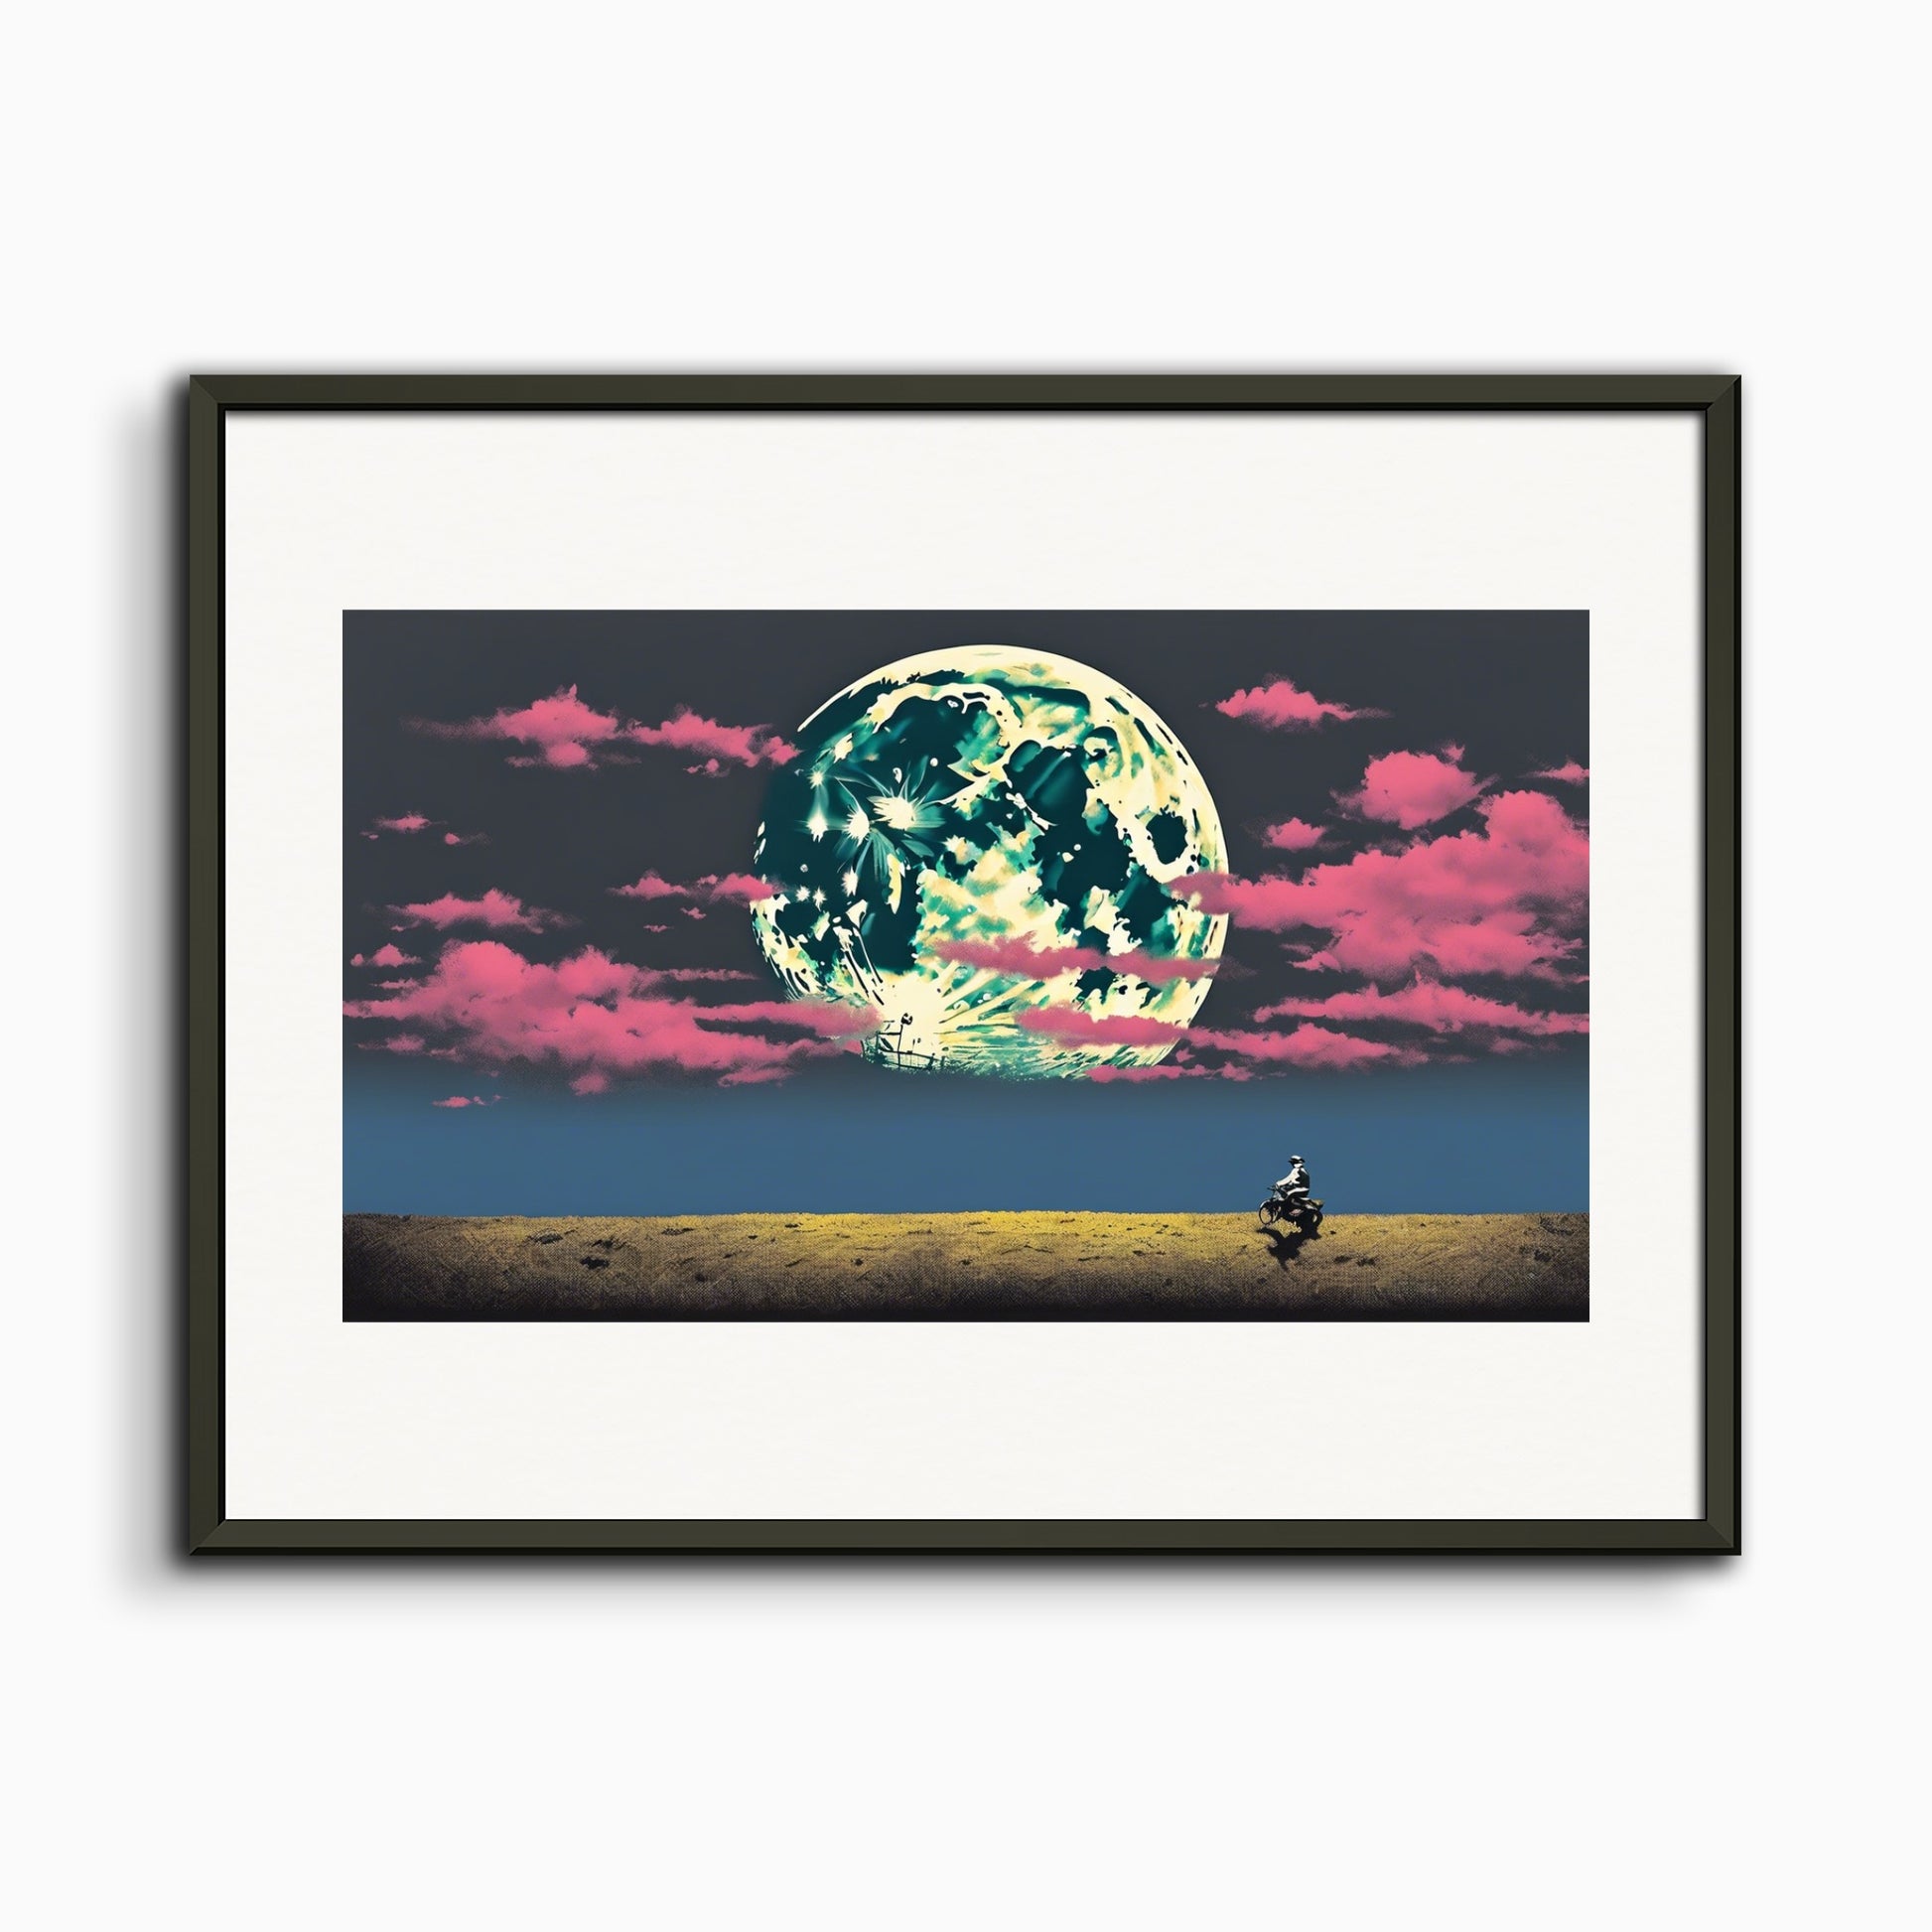 Poster: Bansky, Lune et nuages